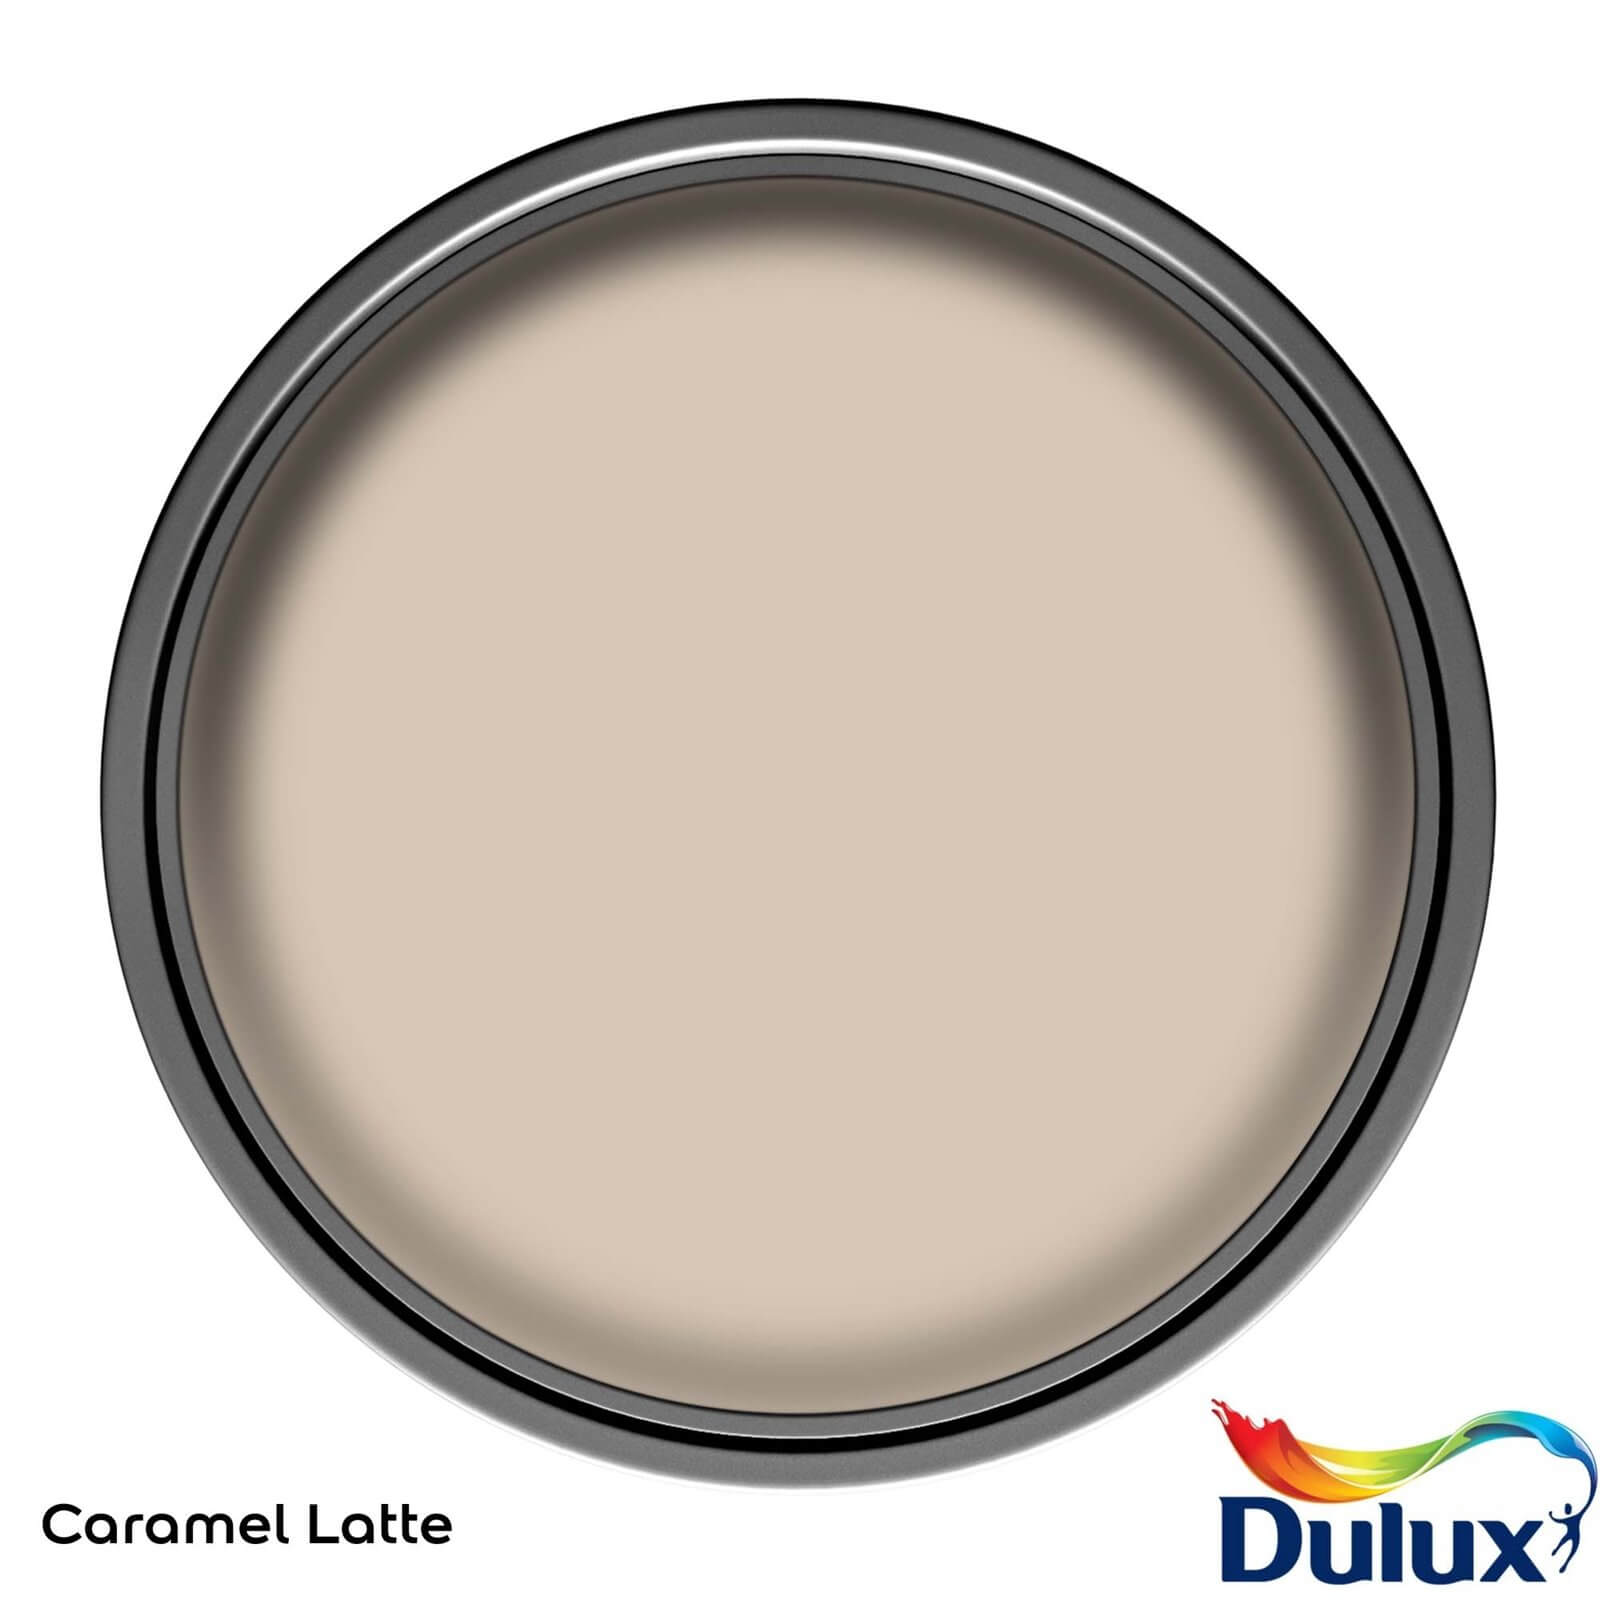 Dulux Once Caramel Latte - Matt Emulsion Paint - 2.5L